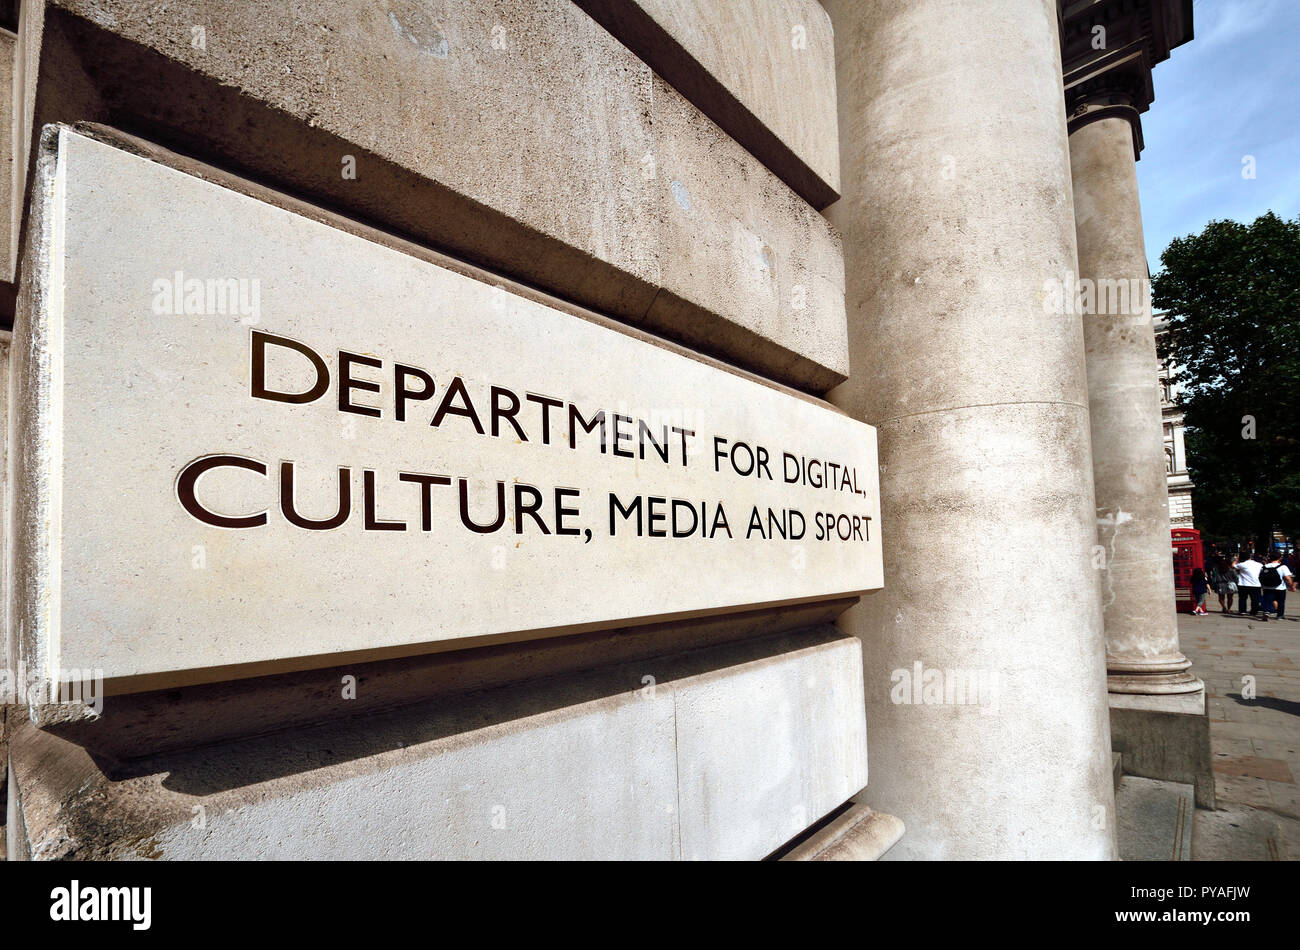 Ministère du gouvernement pour le numérique, la culture, les médias et le sport, Parliament Street, Londres, Angleterre, Royaume-Uni. Banque D'Images